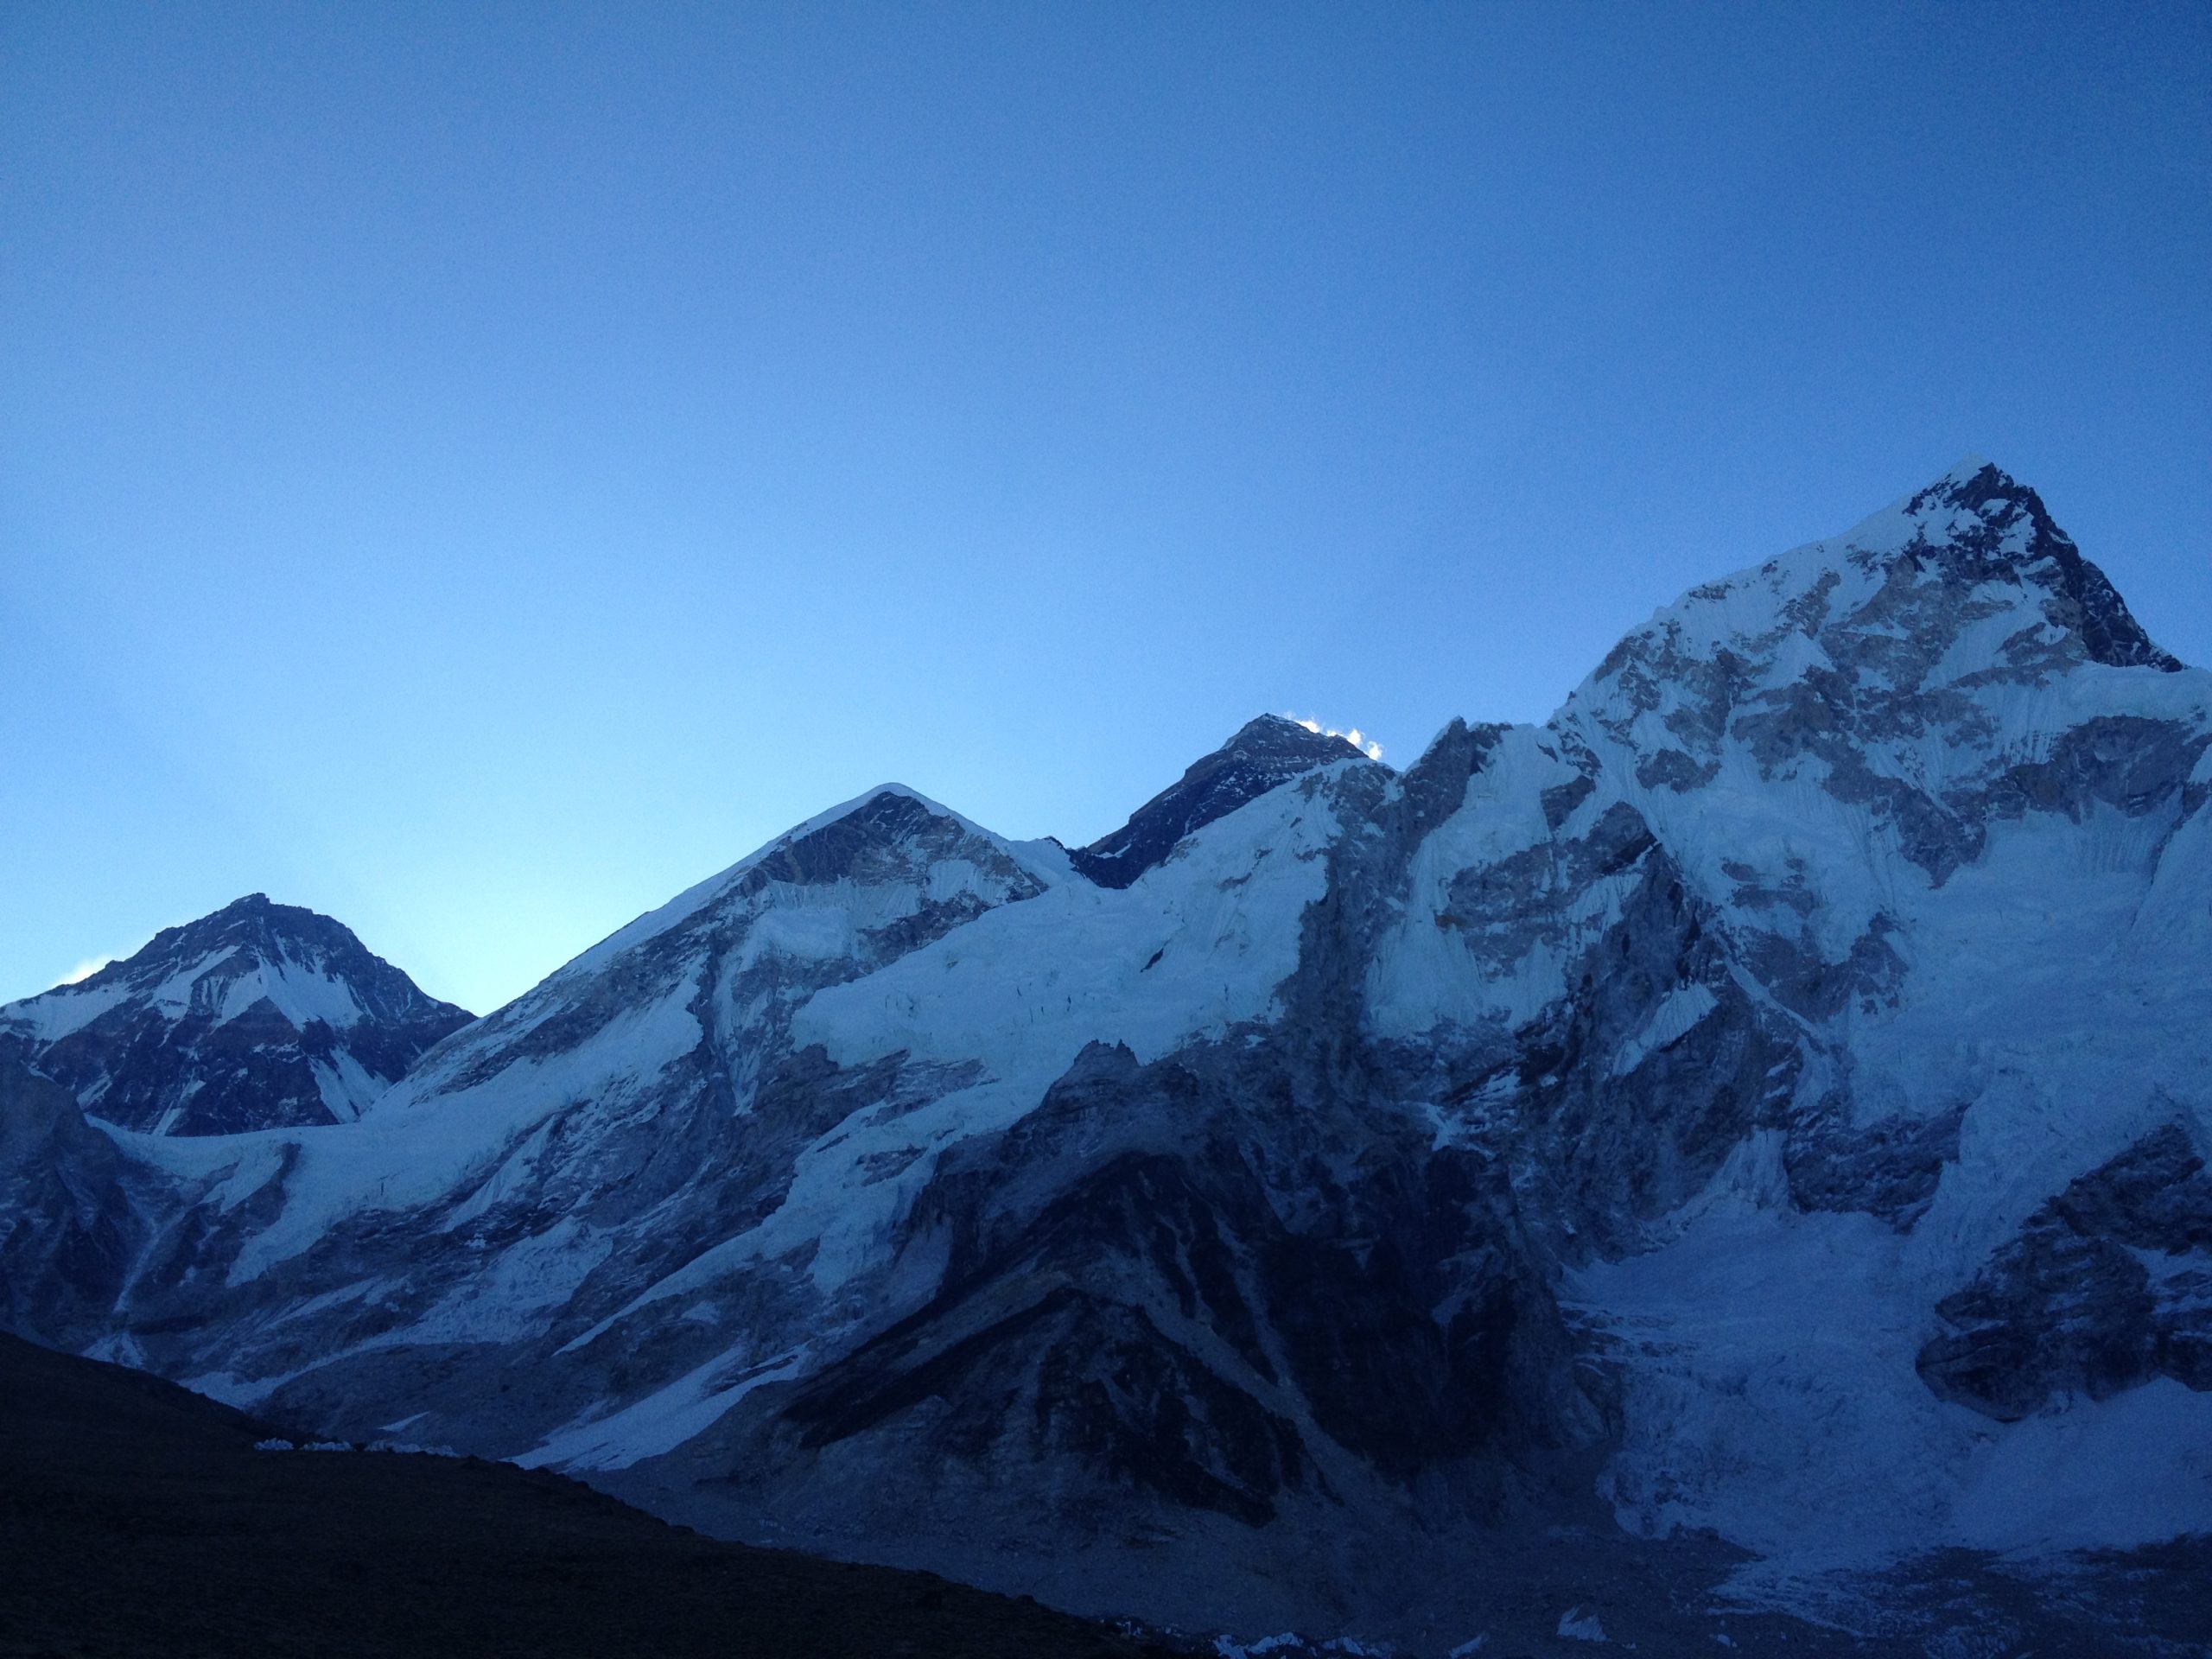 Luxury Everest Base camp tour